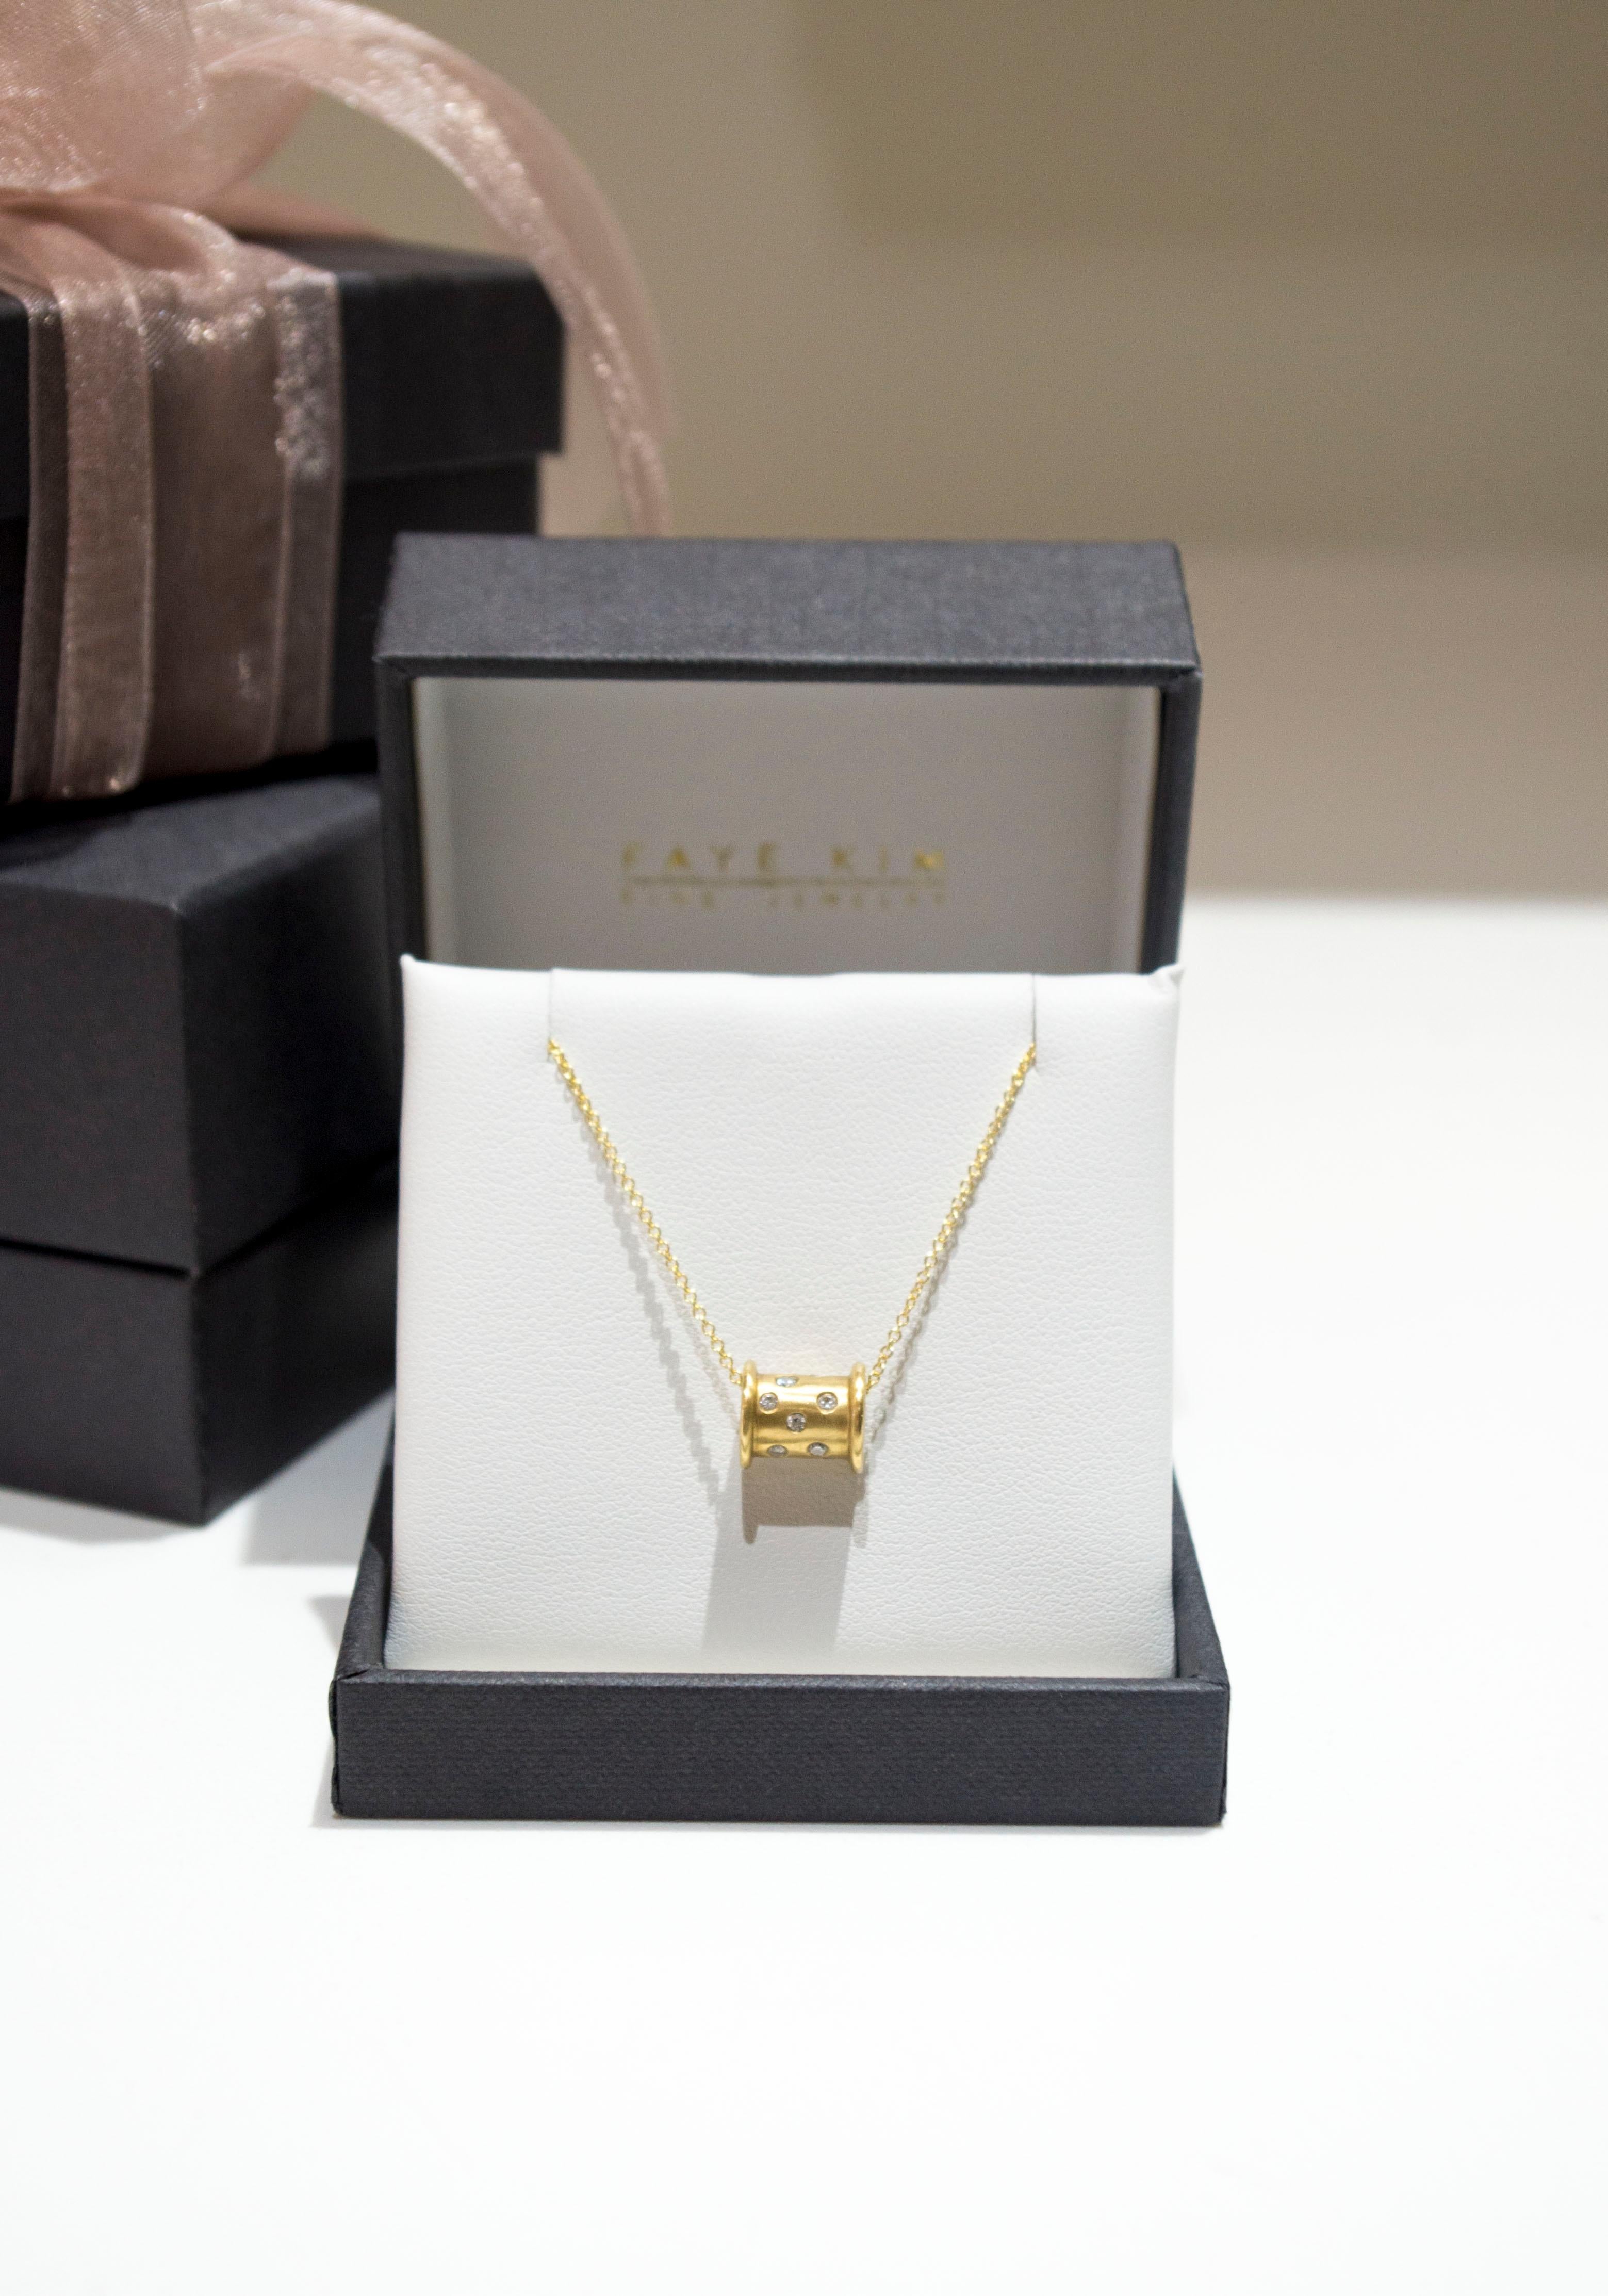 Spool-Halskette aus 18 Karat Gold mit Diamanten von Faye Kim Damen im Angebot